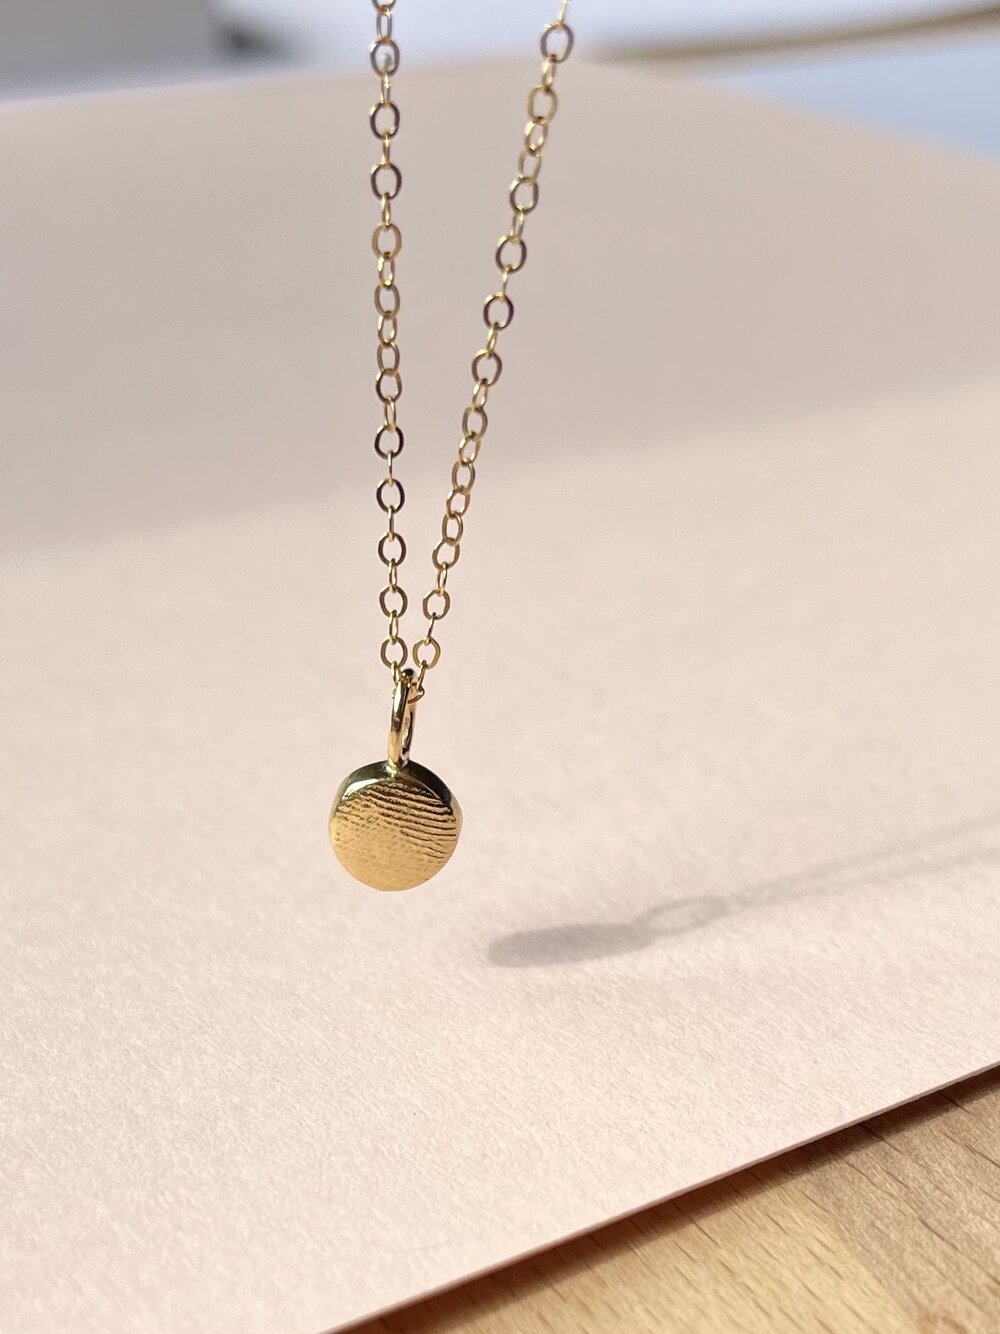 Oval or Circle Fingerprint Pendant - 9ct Gold - Fingerprint Impression Kit + Necklace